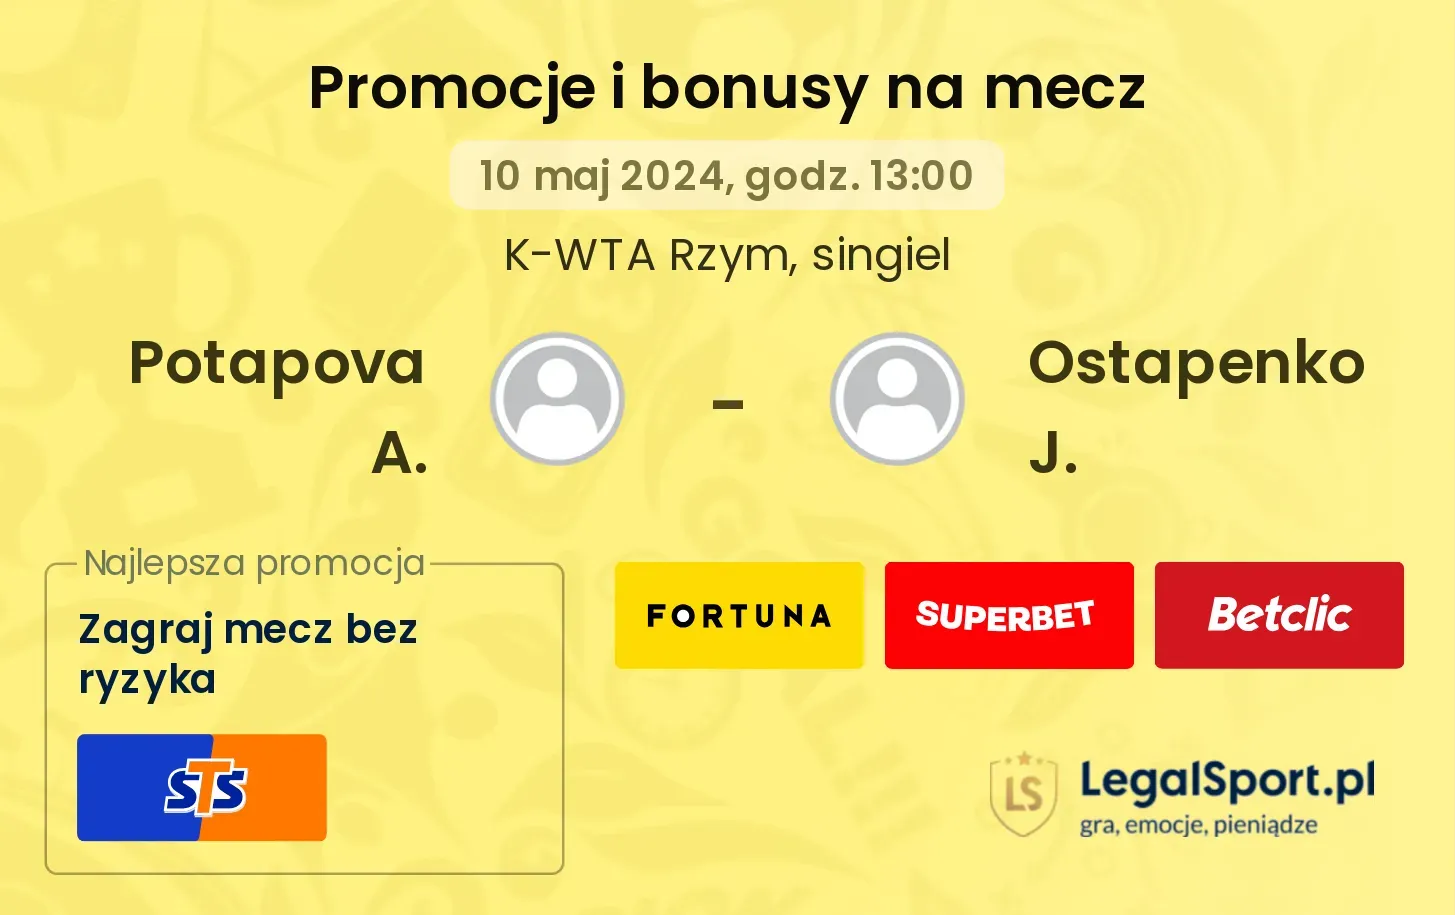 Potapova A. - Ostapenko J. promocje bonusy na mecz